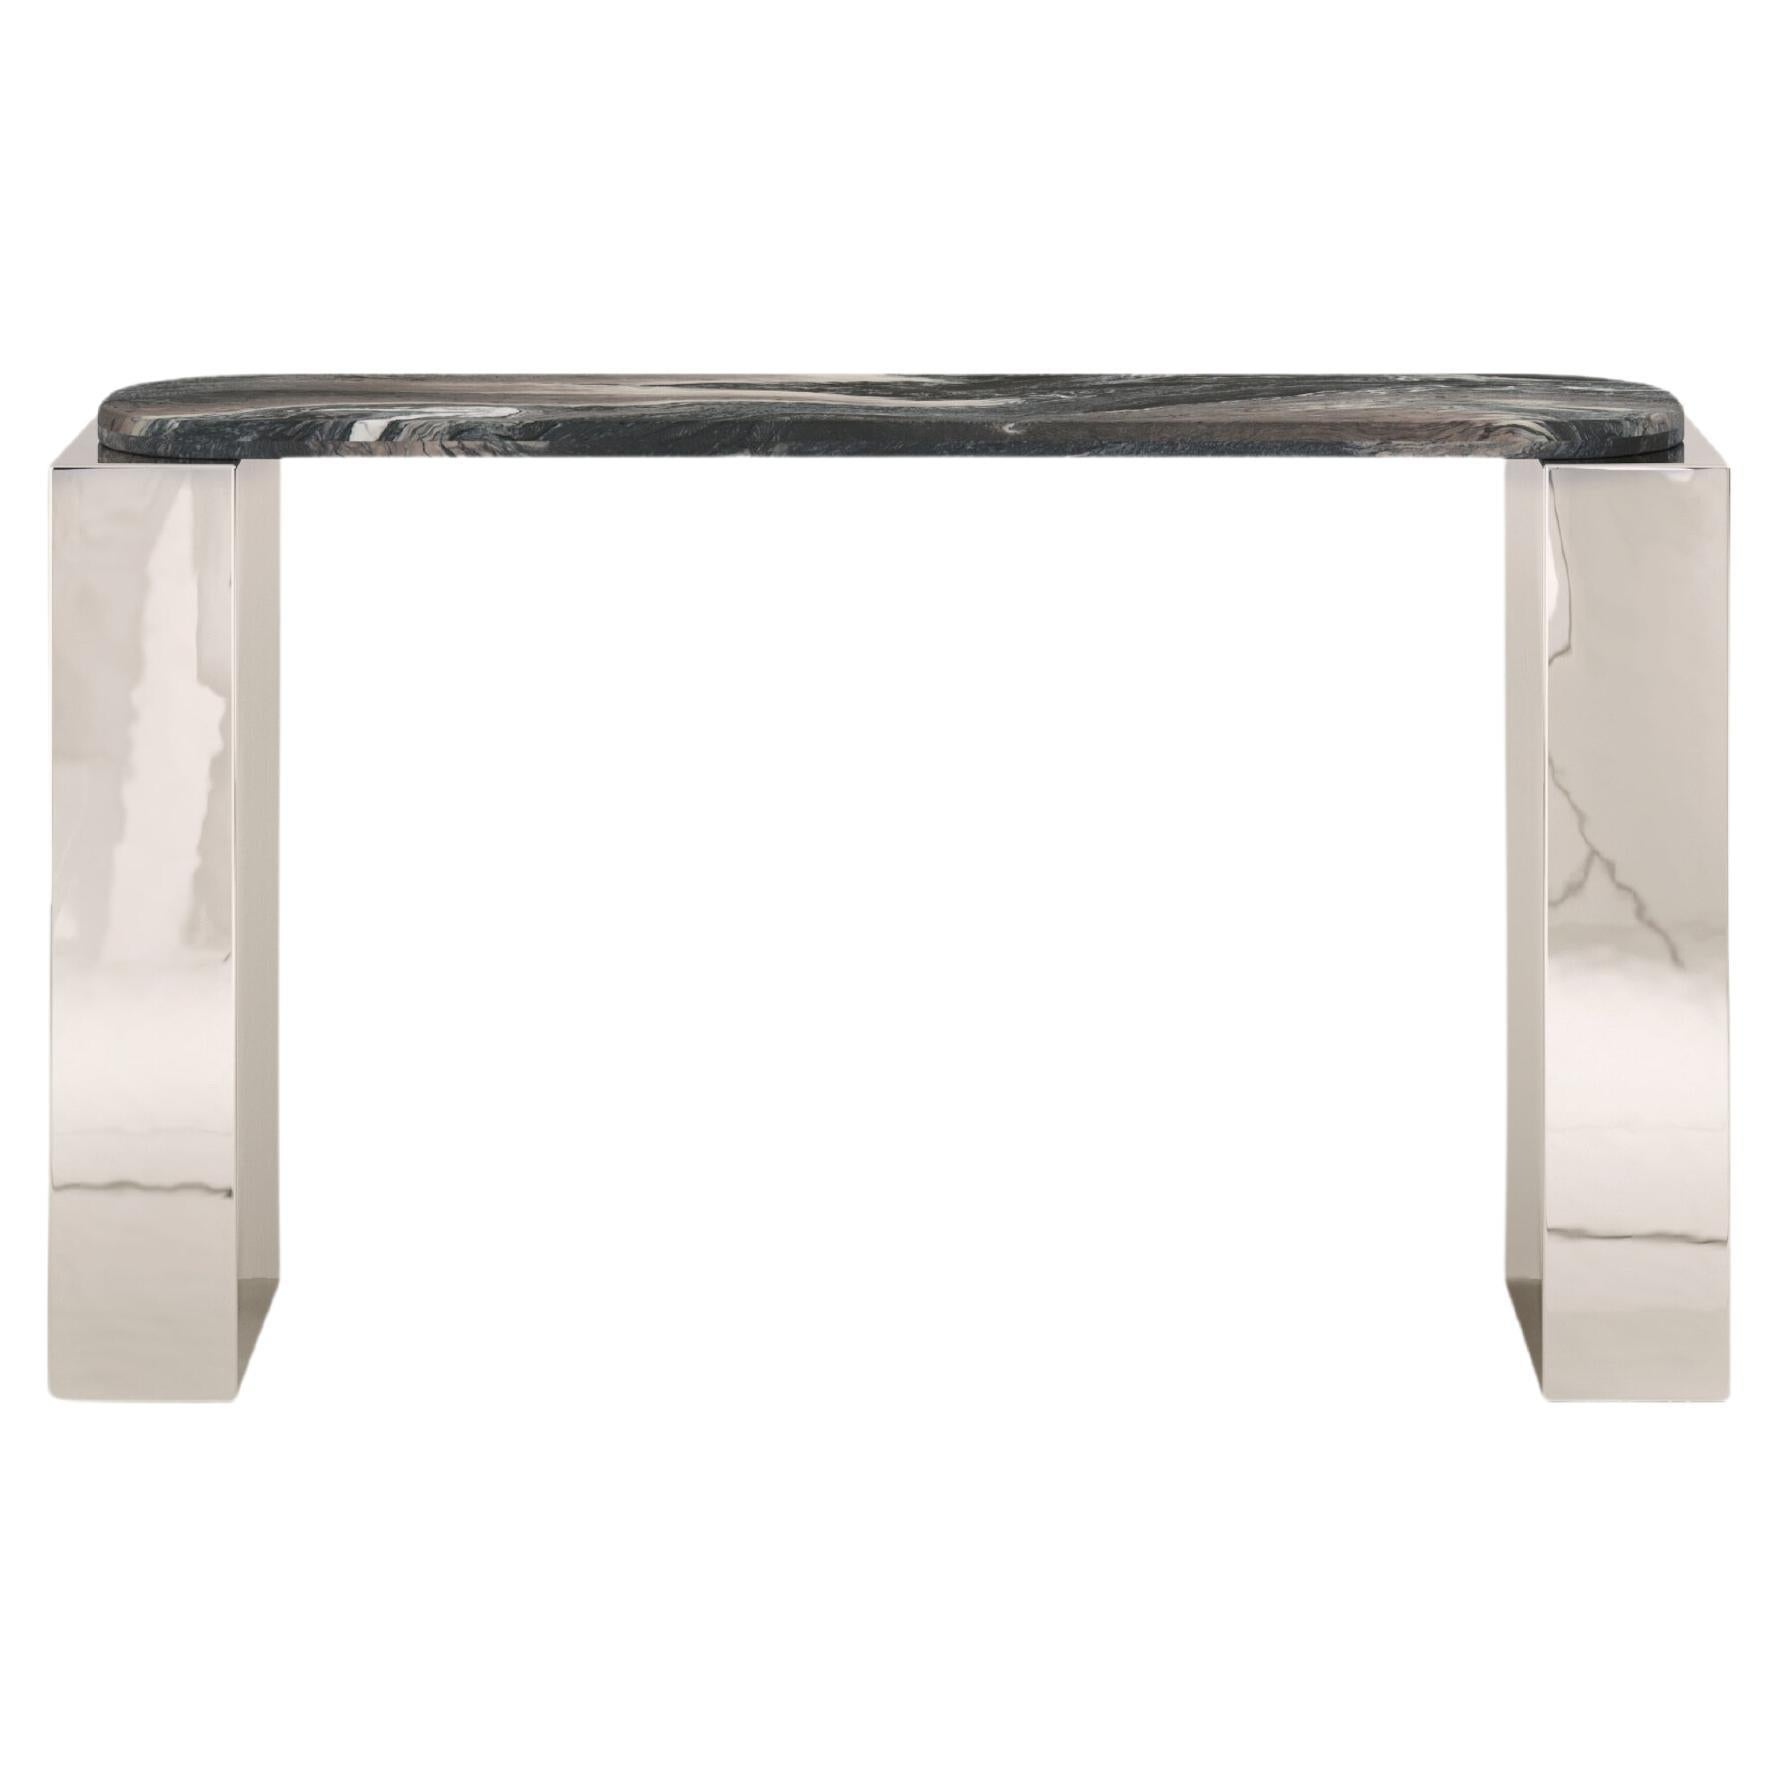 FORM(LA) Cubo Console Table 50”L x 17”W x 36”H Ondulato Marble & Chrome For Sale